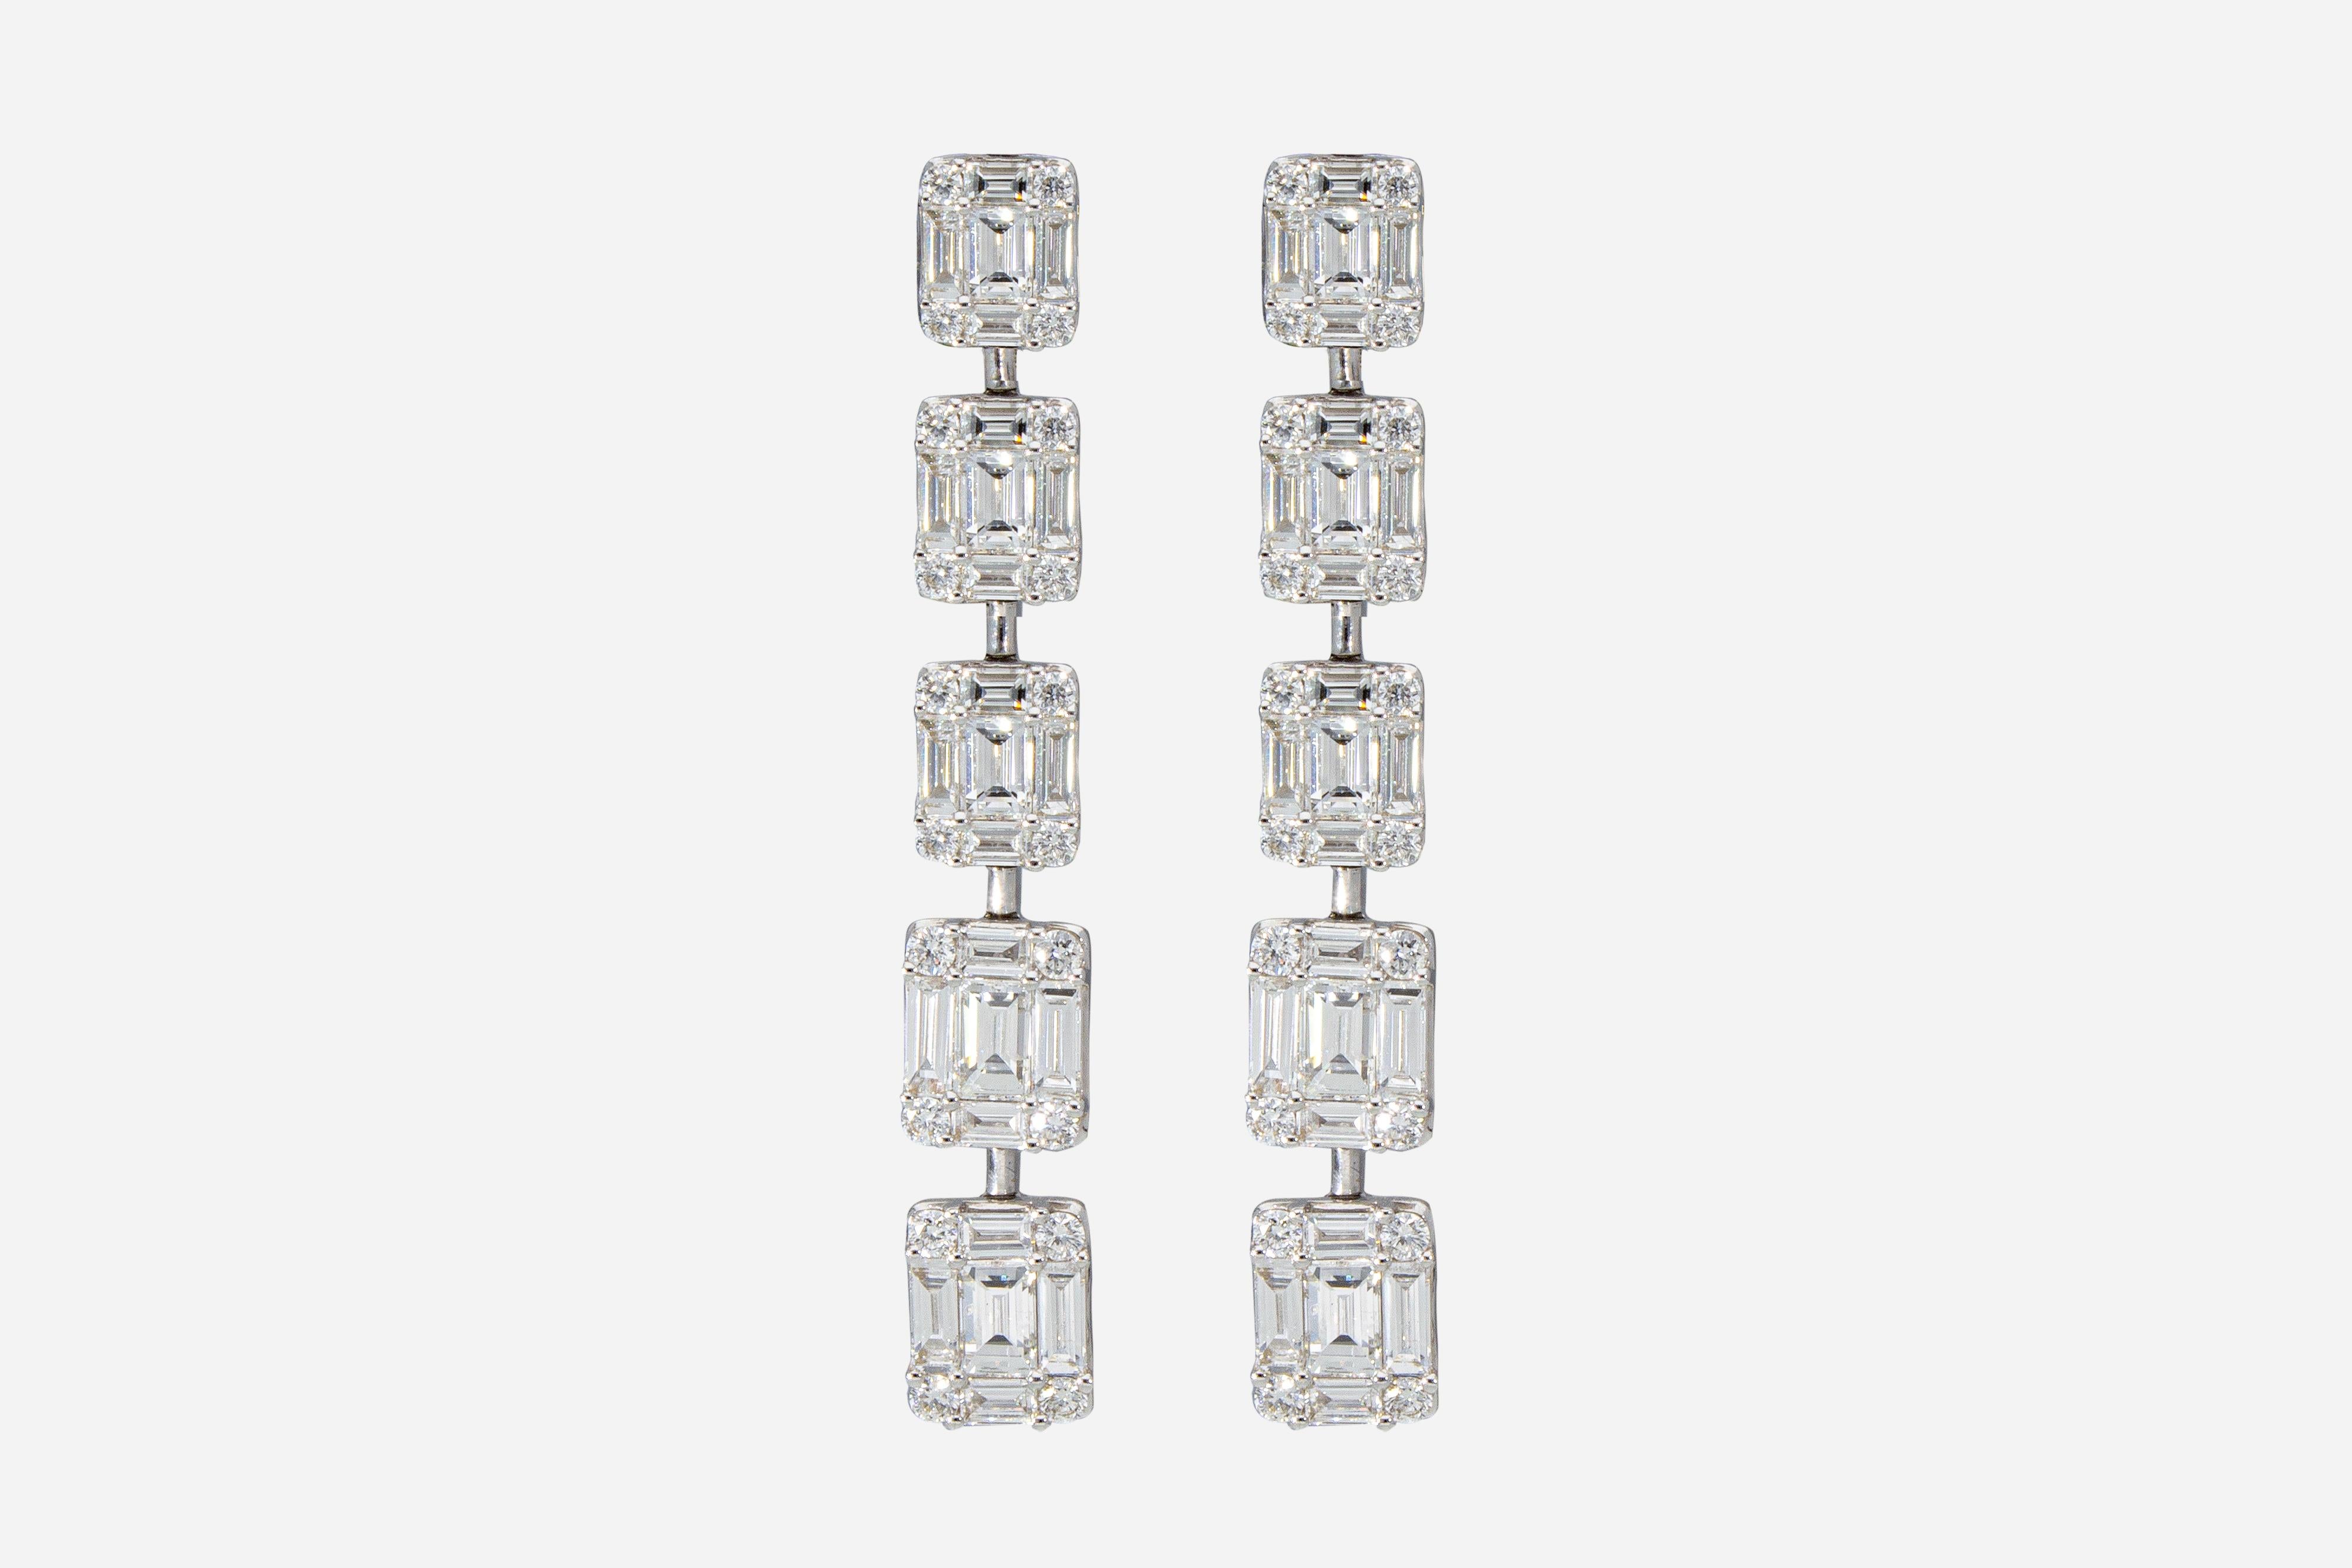 Die Ohrringe bestehen aus 10 abgestuften rechteckigen Elementen. 
Jedes Element ist mit 4 Diamanten im Brillantschliff und 5 Diamanten im Baguetteschliff besetzt. 
Gesamtzahl der Brillanten: n ° 90 
Karatgewicht insgesamt: 3,65 ct
Die Ohrringe sind